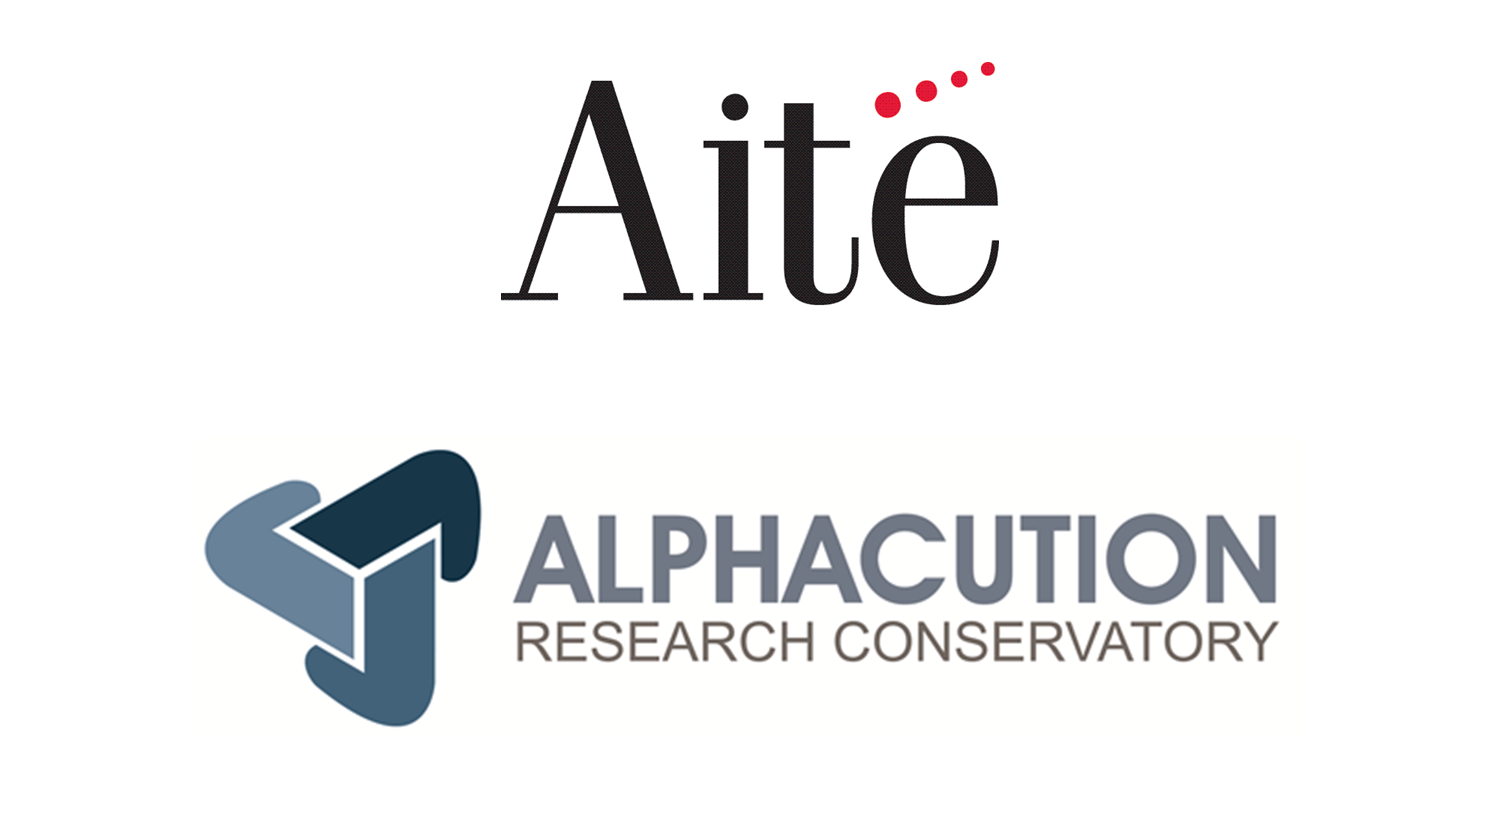 Aite Group Publishes Alphacution’s Asset Manager Tech Spend Study (Press Release)